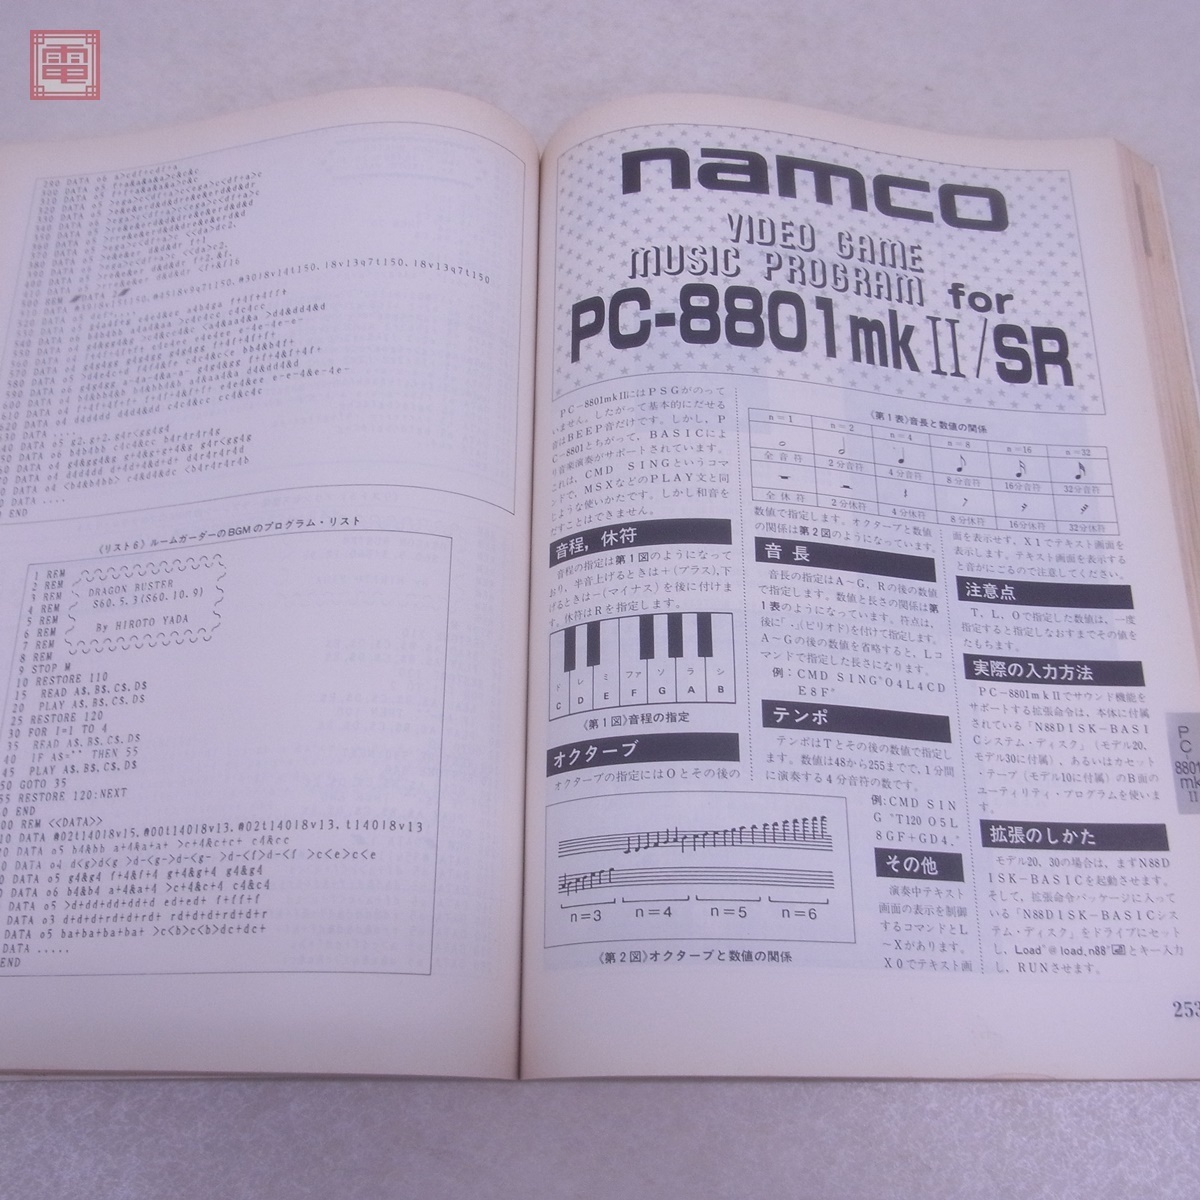  журнал microcomputer BASIC журнал отдельный выпуск Namco видео игра * музыка * program большой полное собрание сочинений радиоволны газета фирма namco[PP